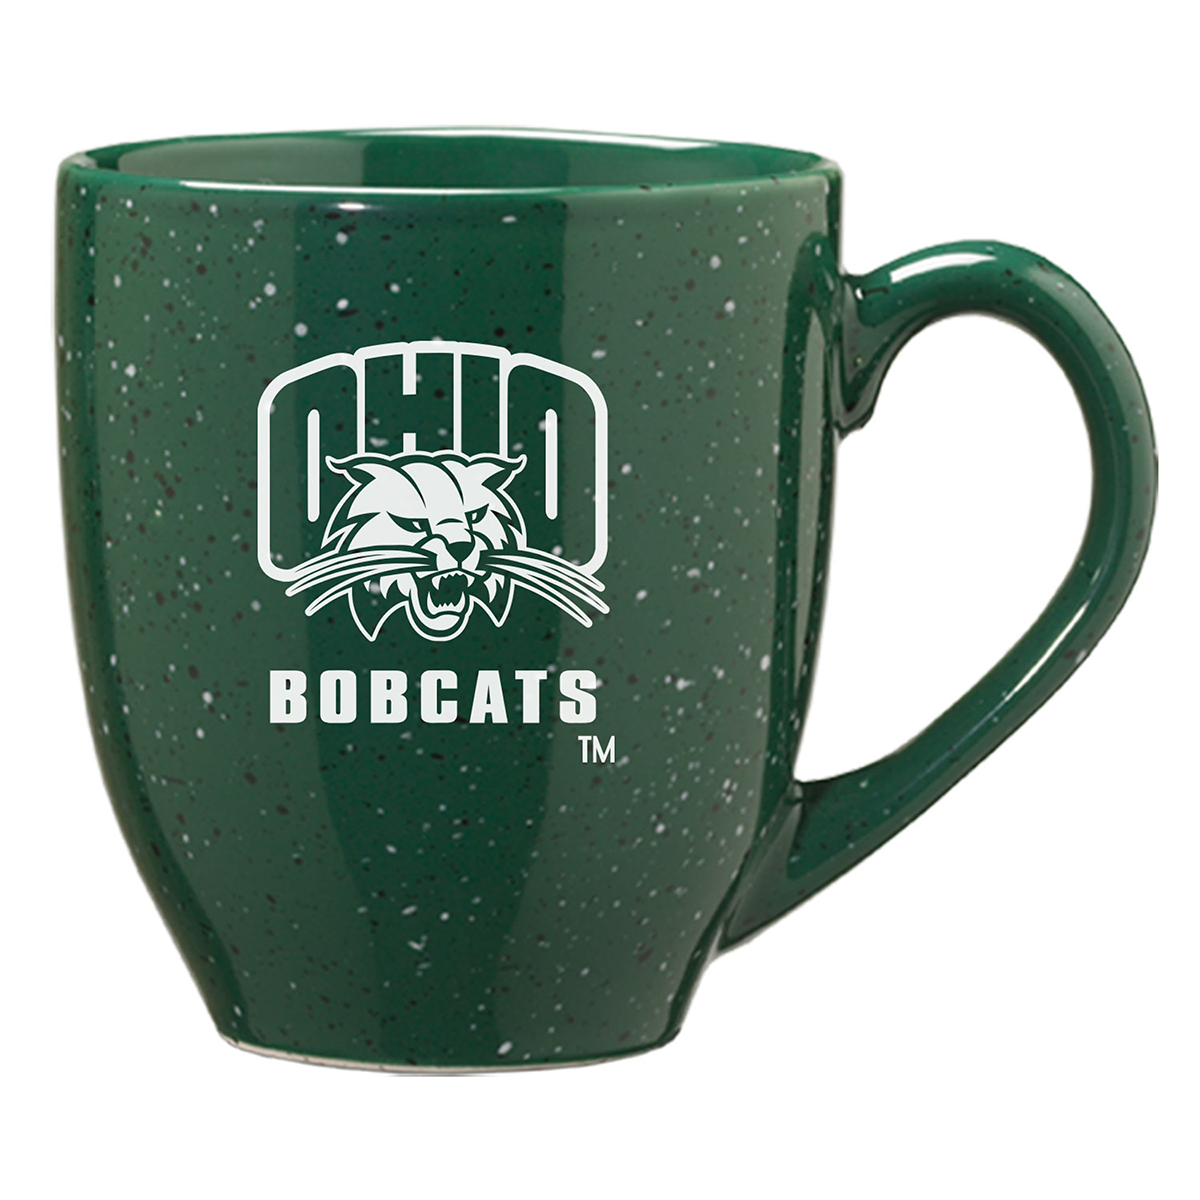 OU Bobcats - 16oz. Bistro Mug